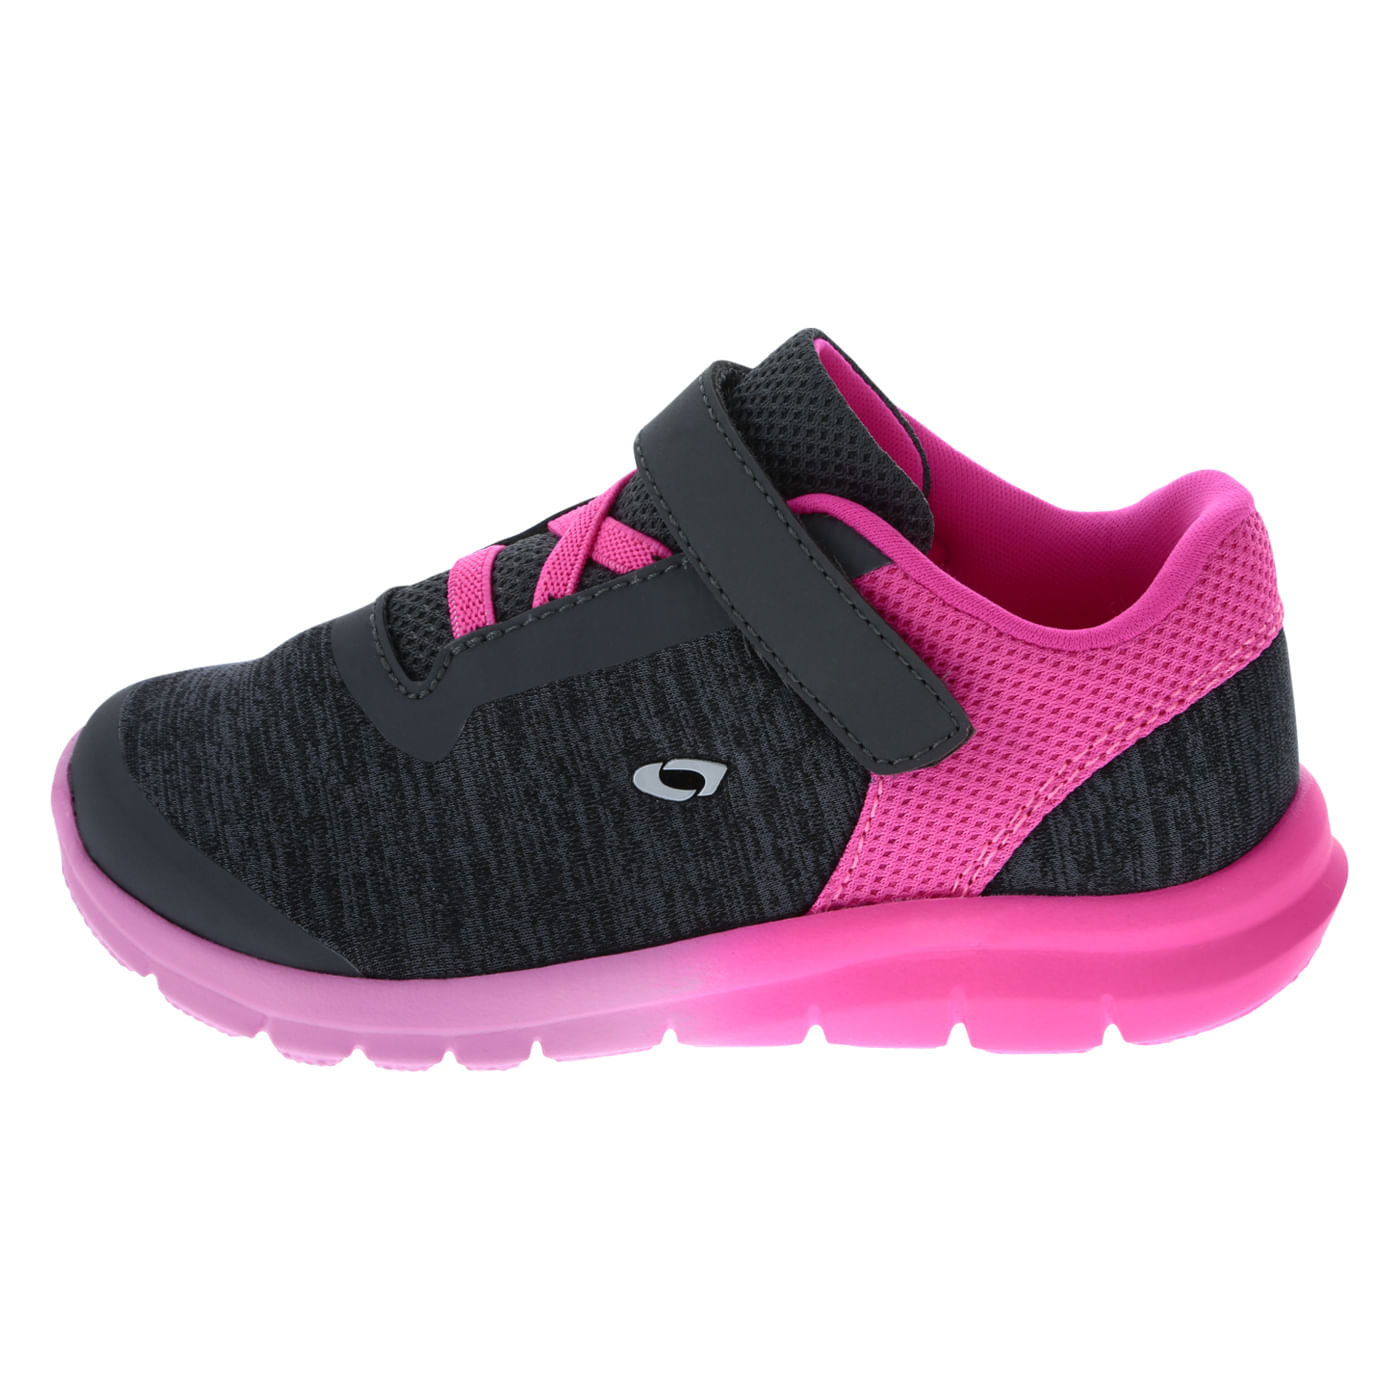 Zapatos deportivos Gusto XT II para niñas | Atléticos y